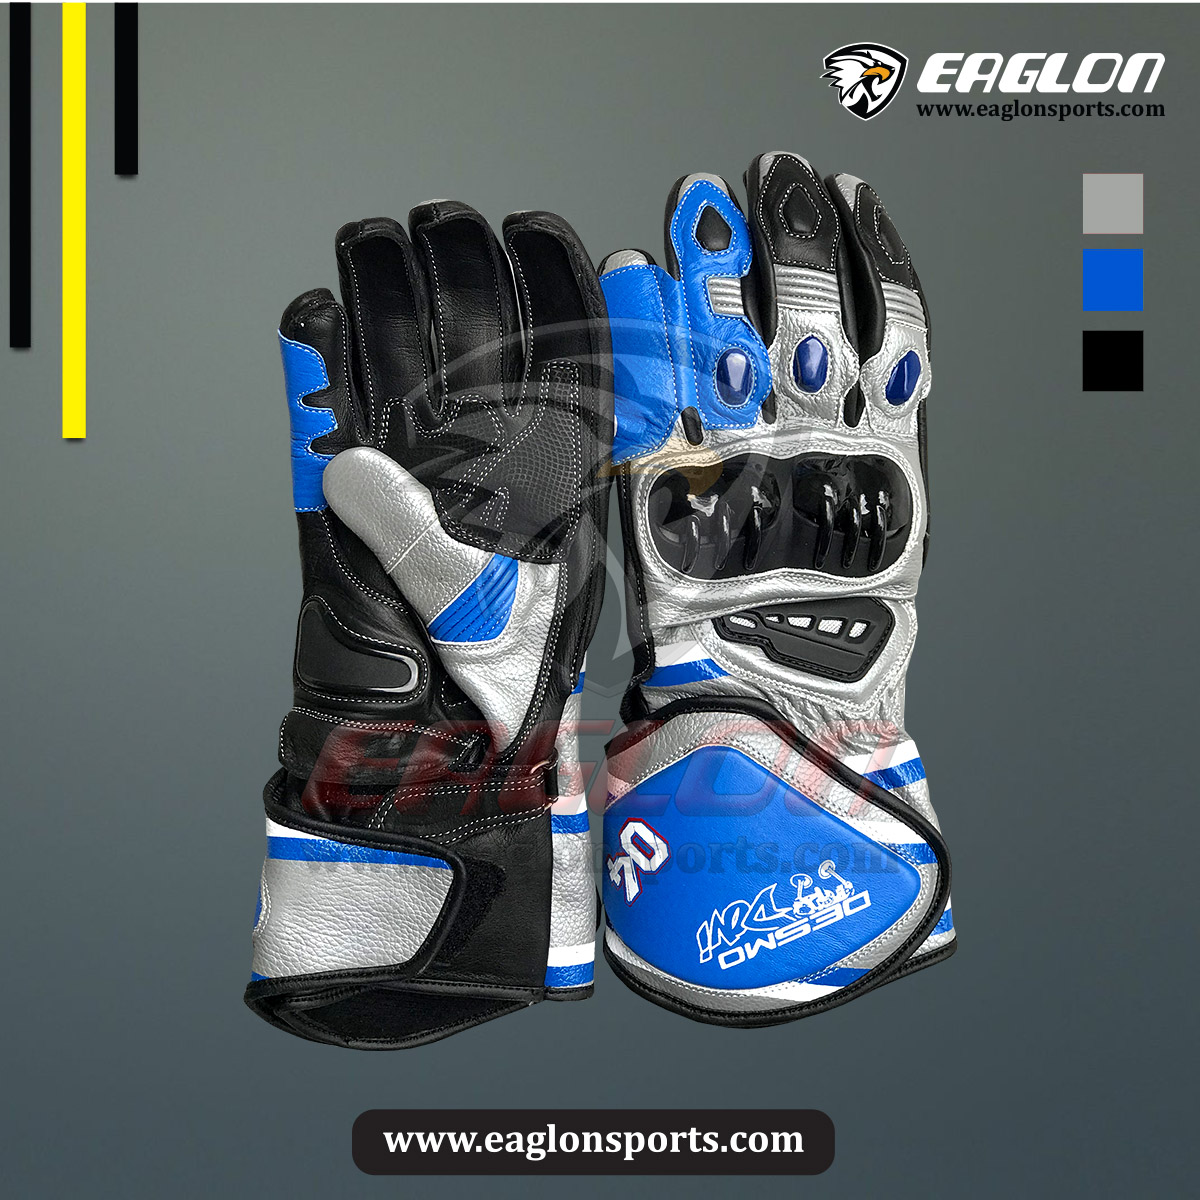 Andrea Dovizioso Ducati Flexbox MotoGP 2018 Leather Race Gloves